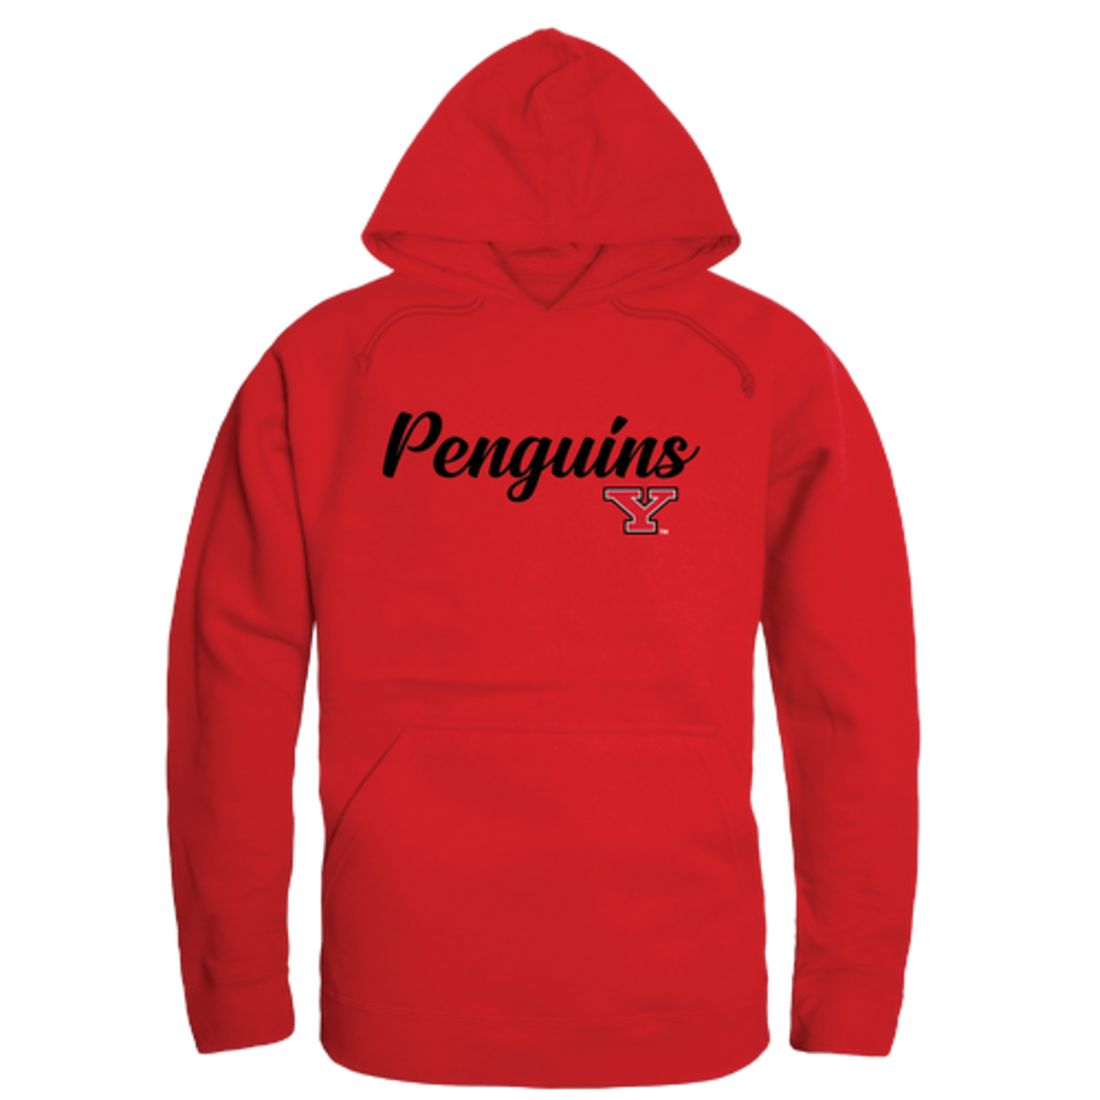 YSU Youngstown State University Penguins Mens Script Hoodie Sweatshirt Black-Campus-Wardrobe